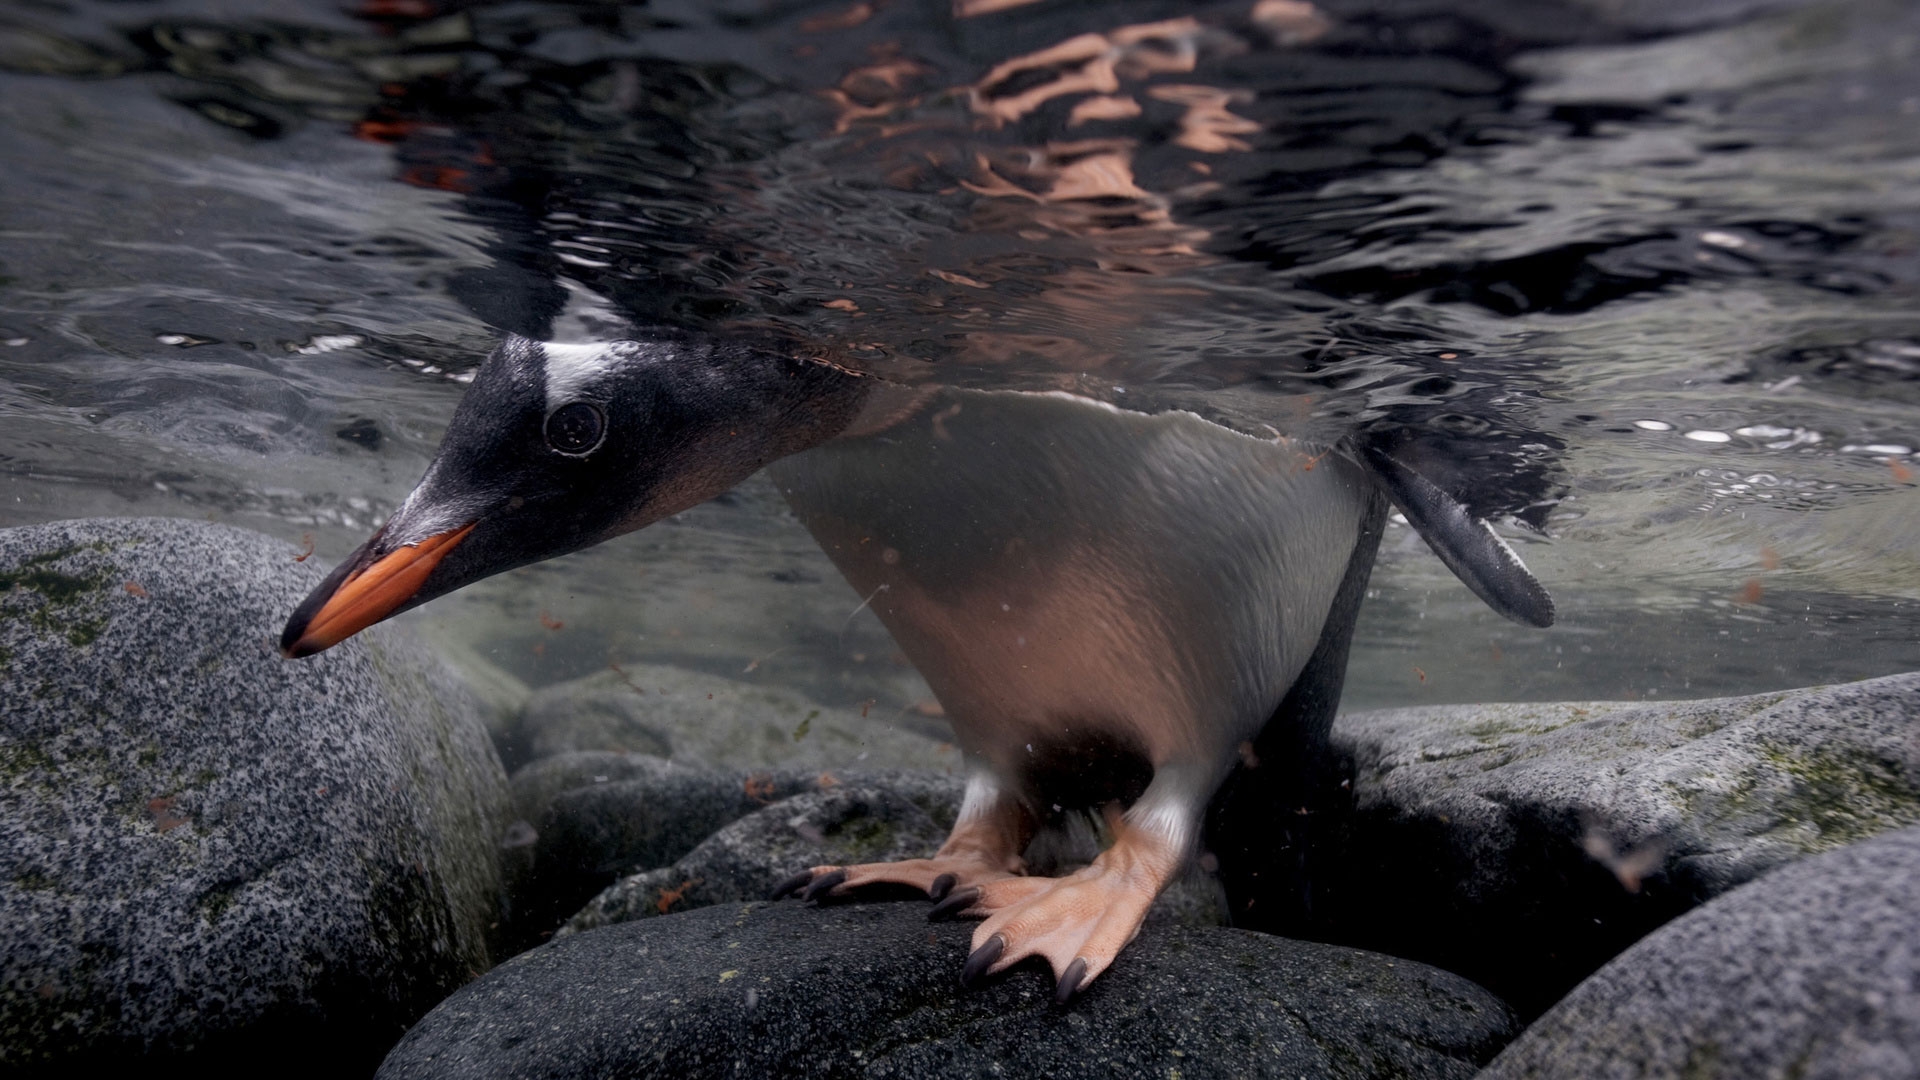 The penguin looked underwater